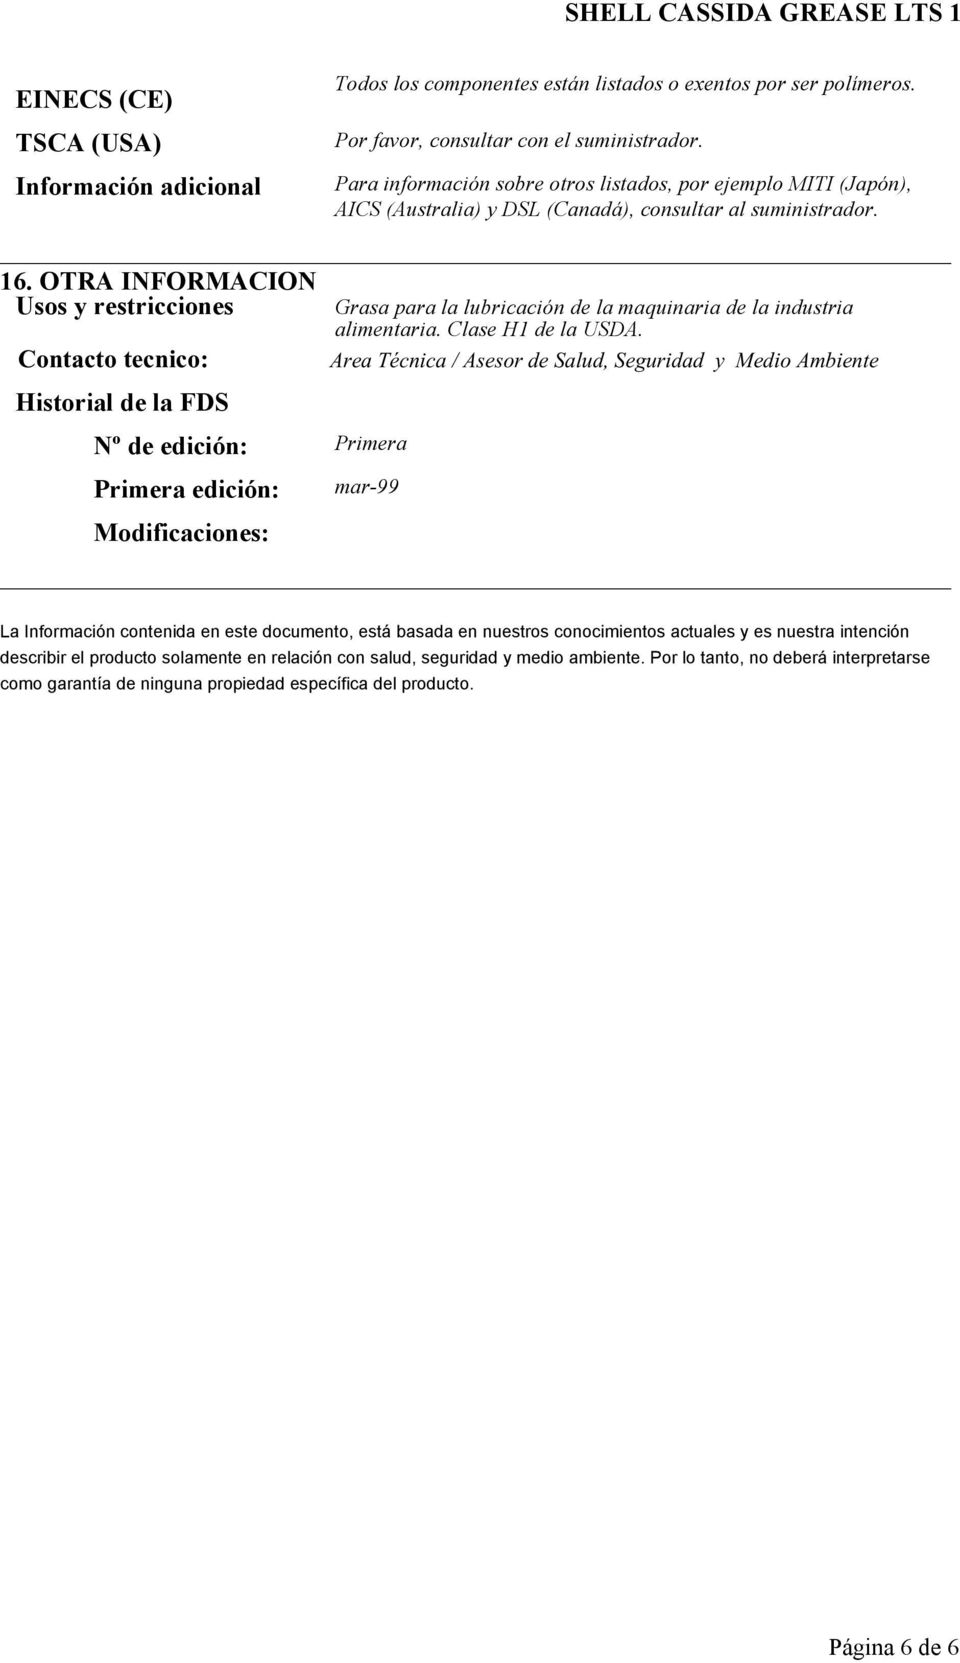 OTRA INFORMACION Usos y restricciones Contacto tecnico: Historial de la FDS Nº de edición: Primera Primera edición: Modificaciones: Grasa para la lubricación de la maquinaria de la industria